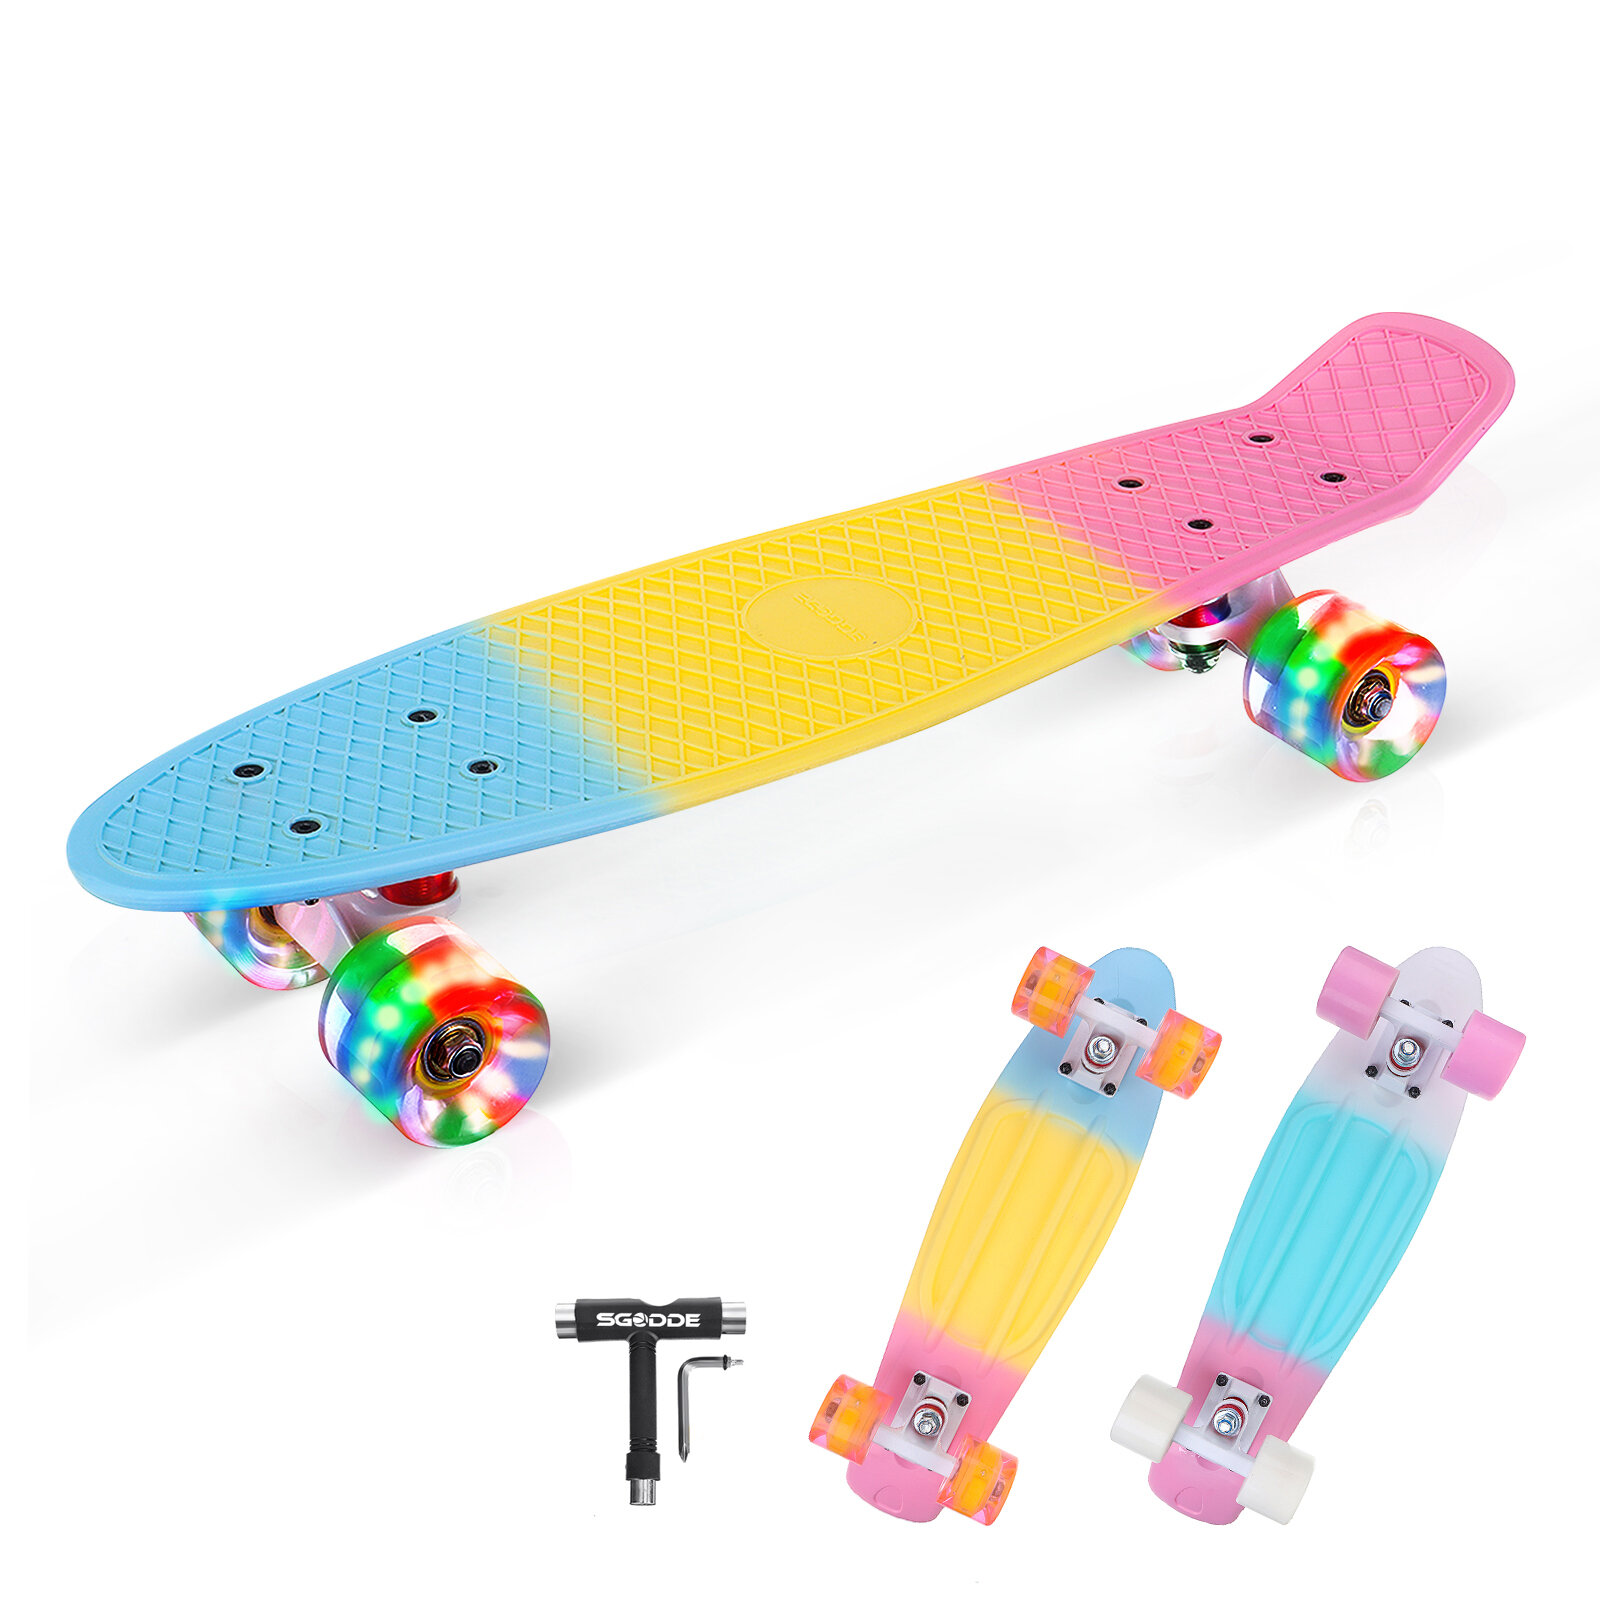 SGODDE 22" Mini Skateboards Cruiser Retro Skateboard Long-board for Kids Ages 6-12 with LED Wheels